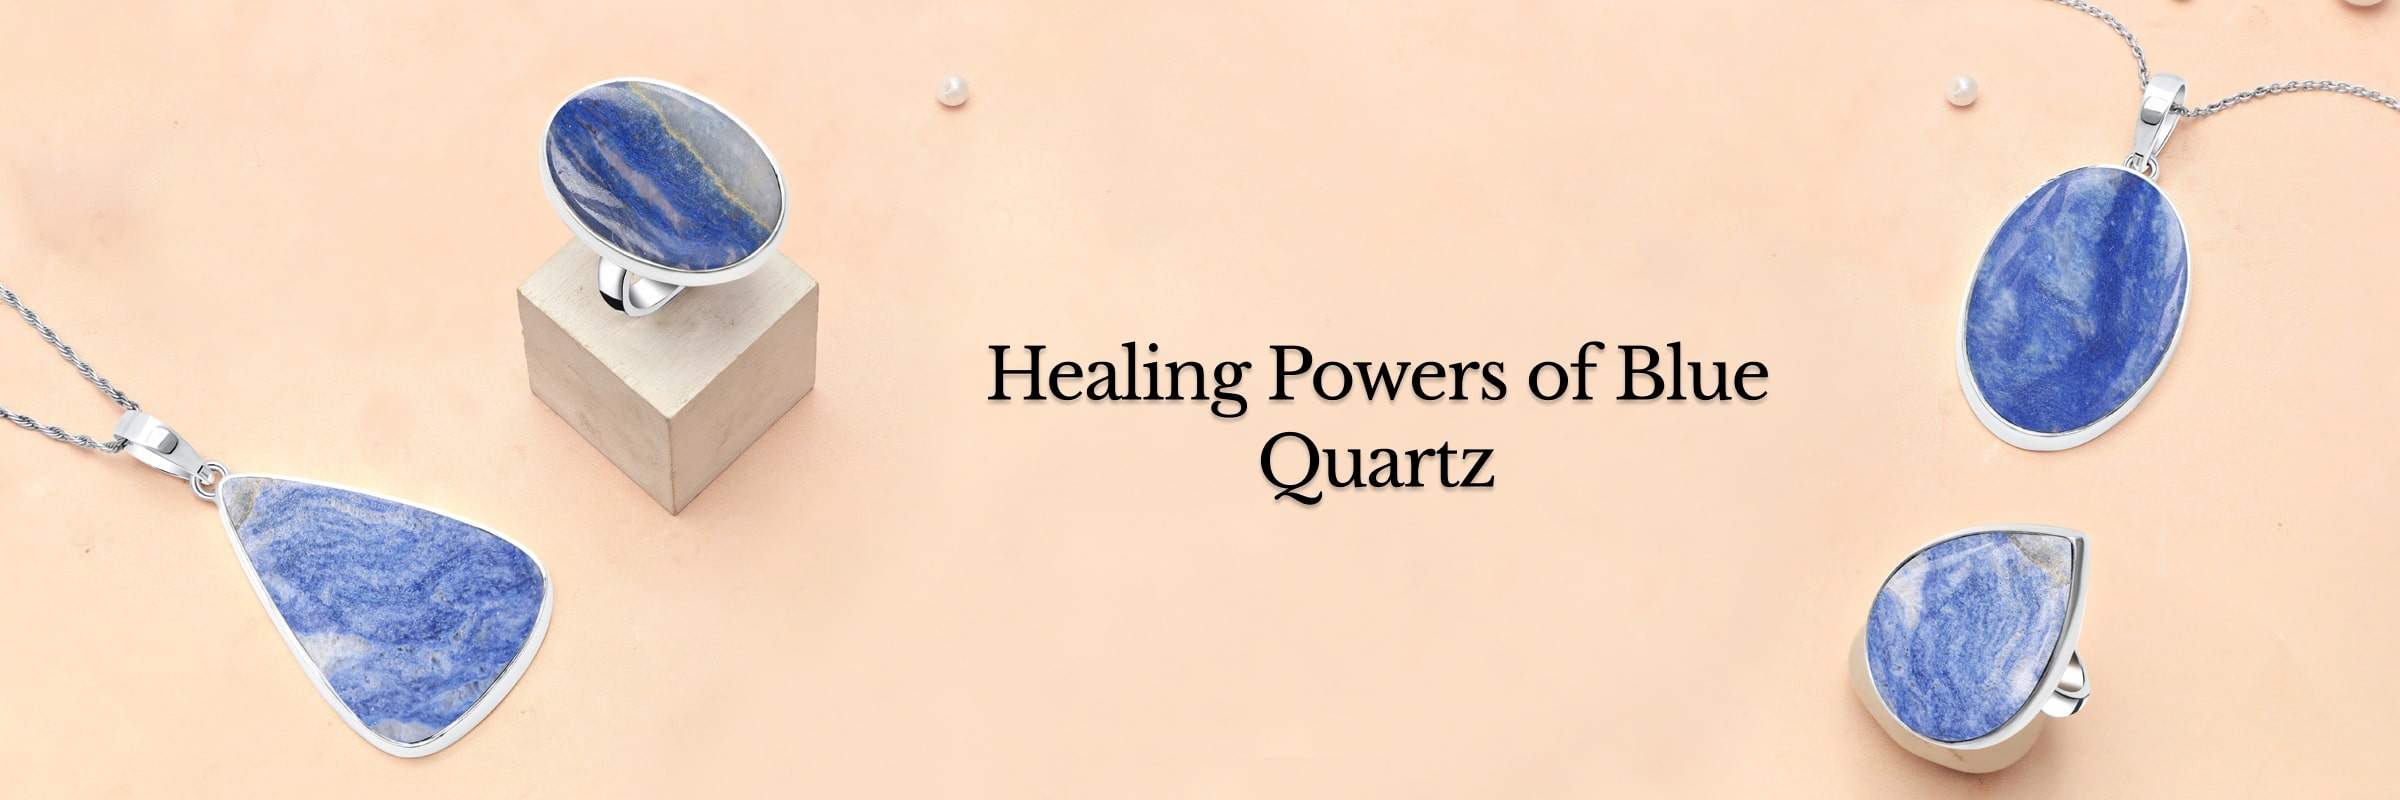 Healing properties of blue quartz